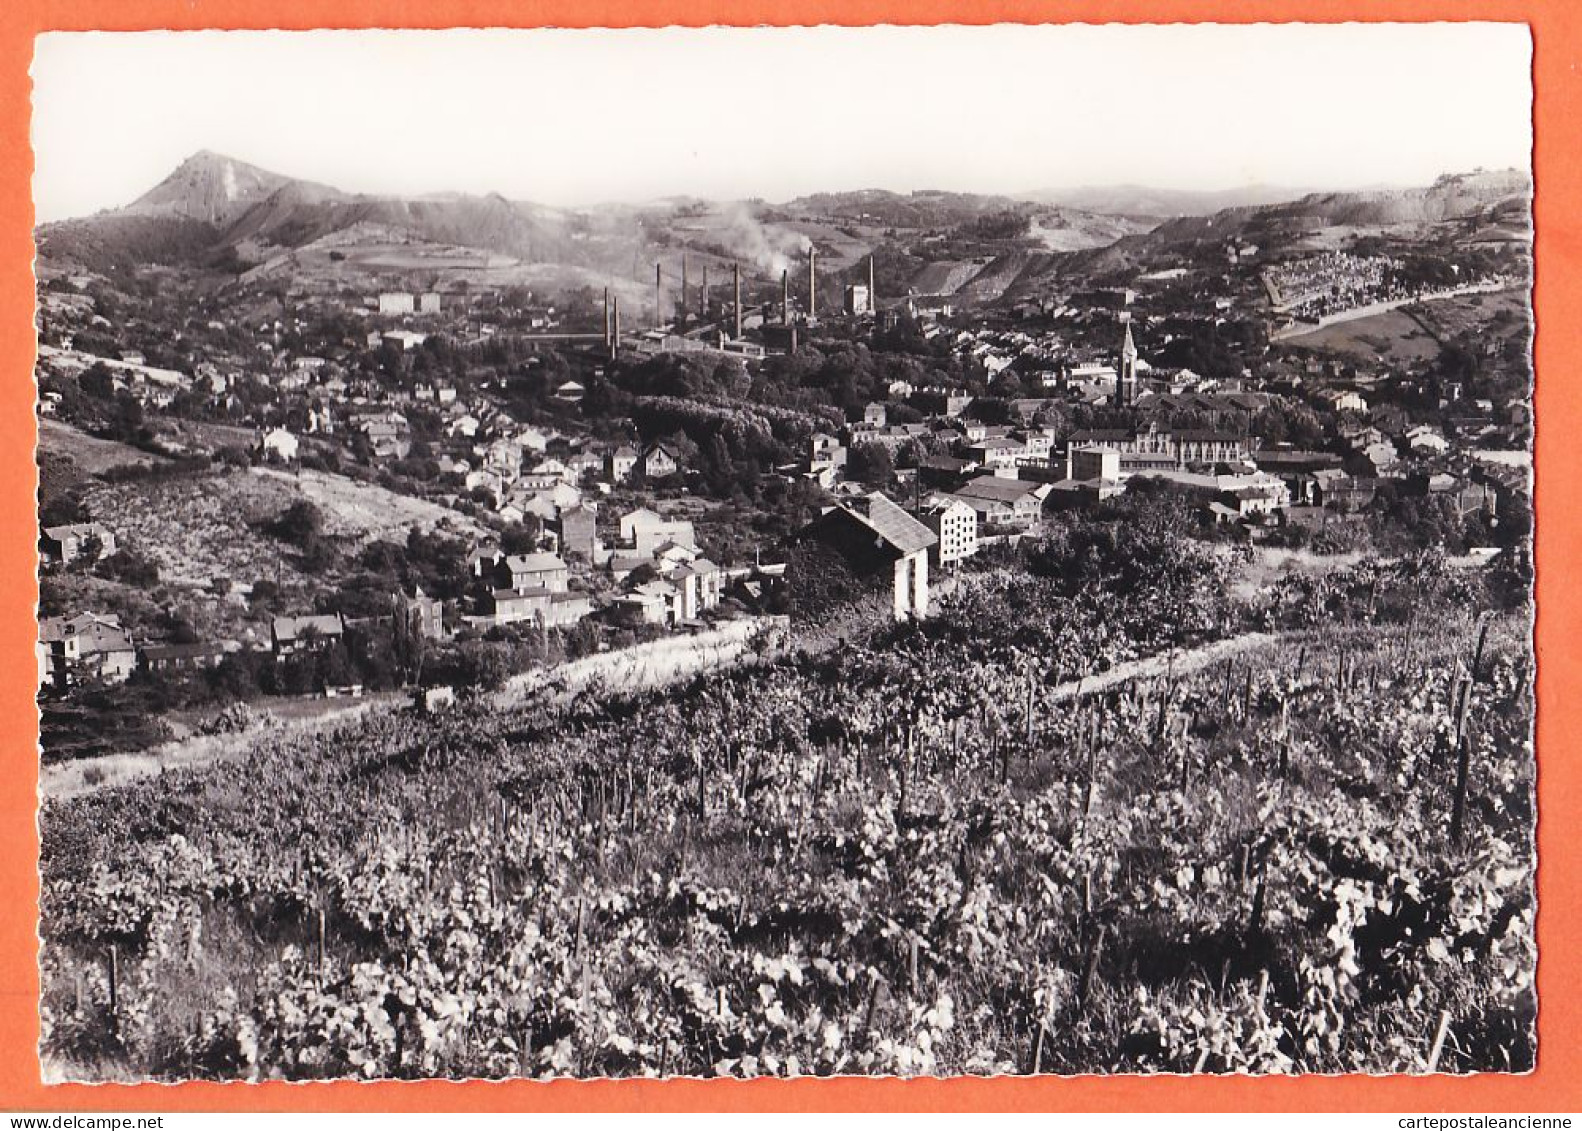 28470 / DECAZEVILLE 12-Aveyron Vue Centre Village Cheminée Mines Charbon 1950s Photo-Bromure BOS Aurillac 1069 - Decazeville